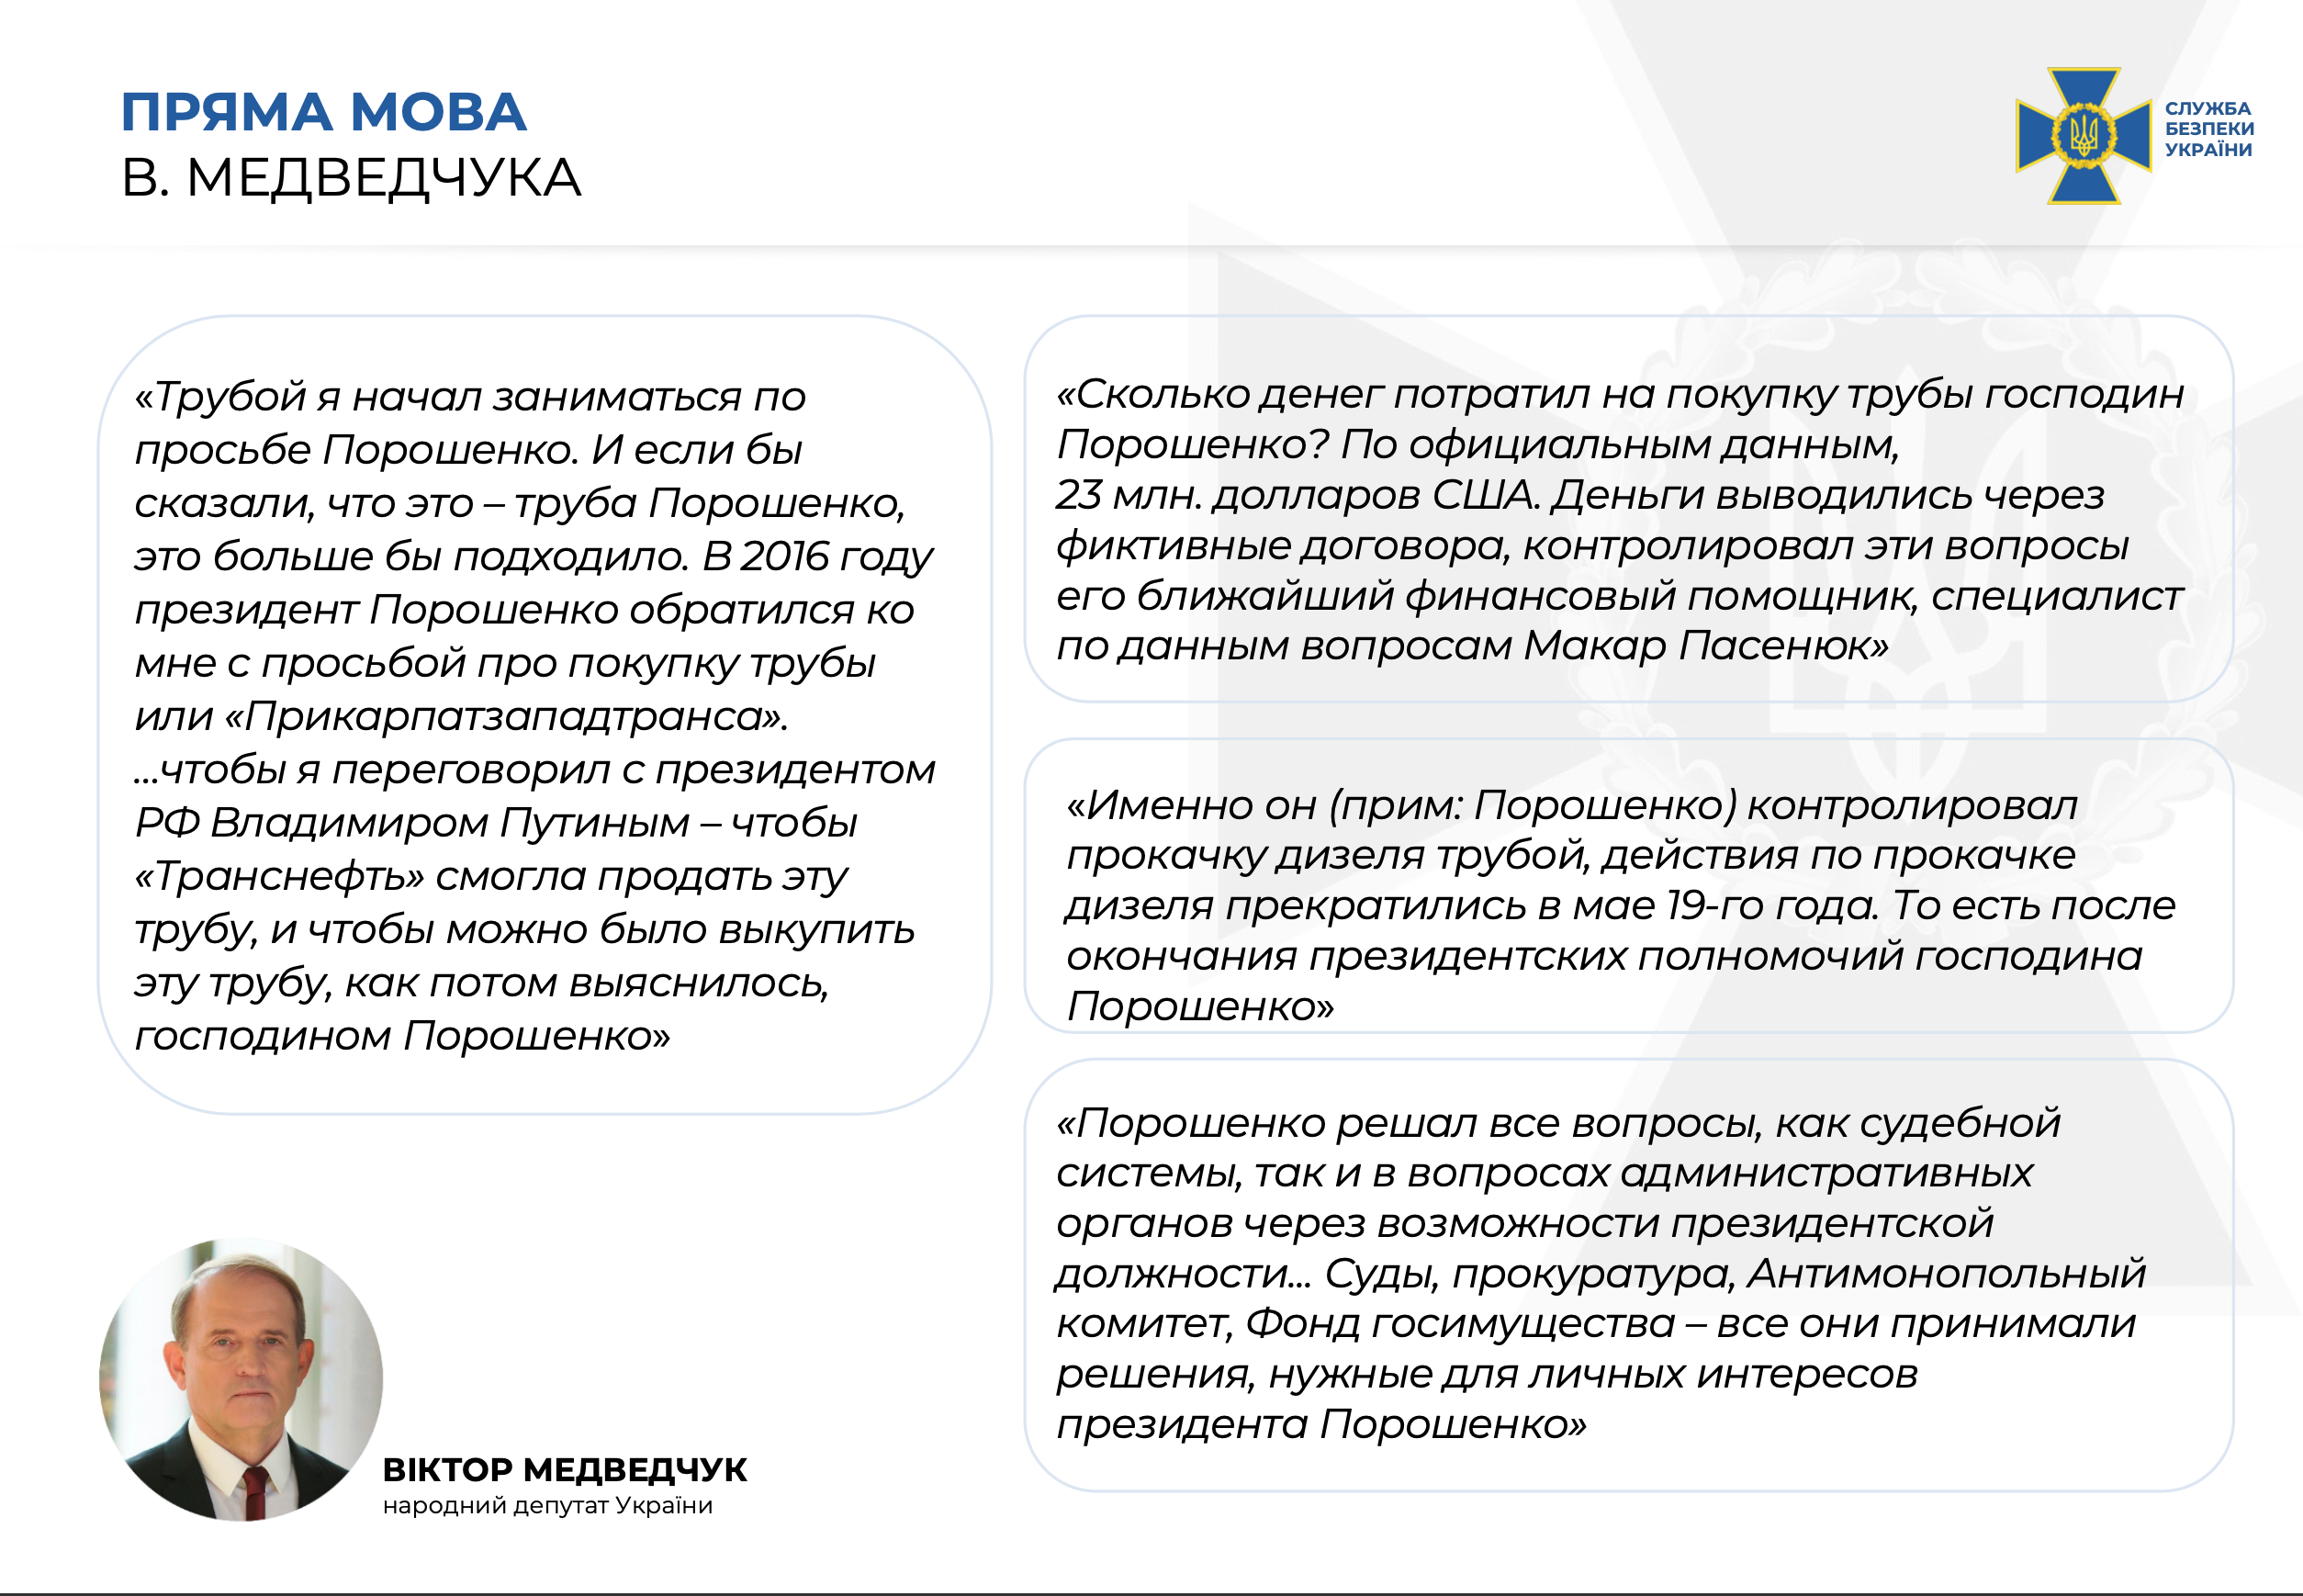 СБУ: Медведчук дал показания против Порошенко (видео) - 2 - изображение